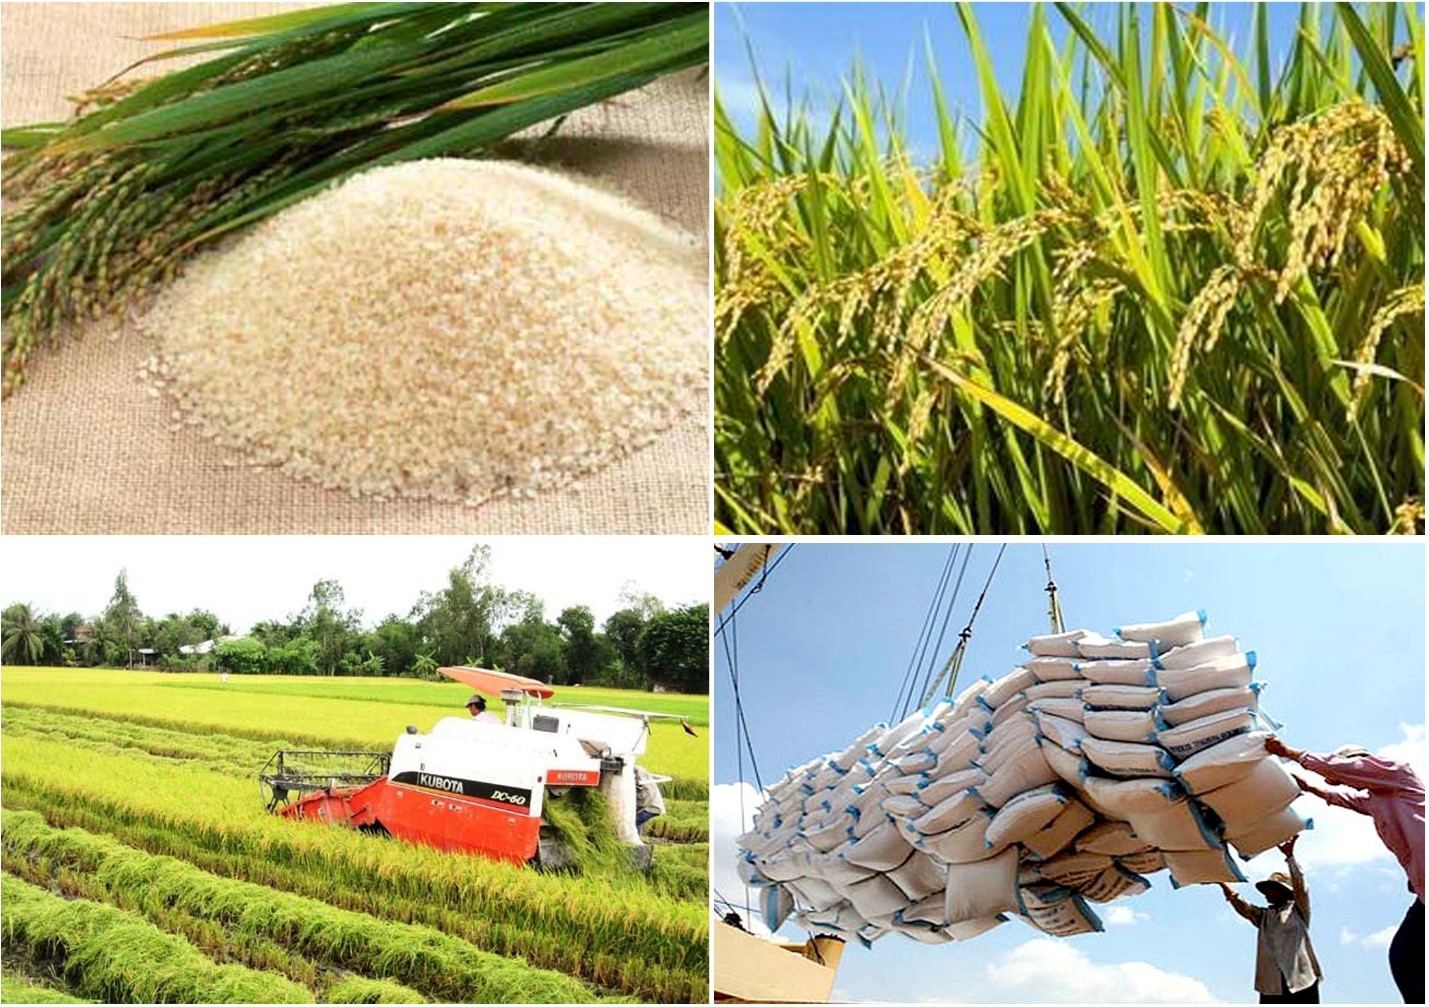 Giá gạo xuất khẩu tăng gần 10 so với cùng kỳ